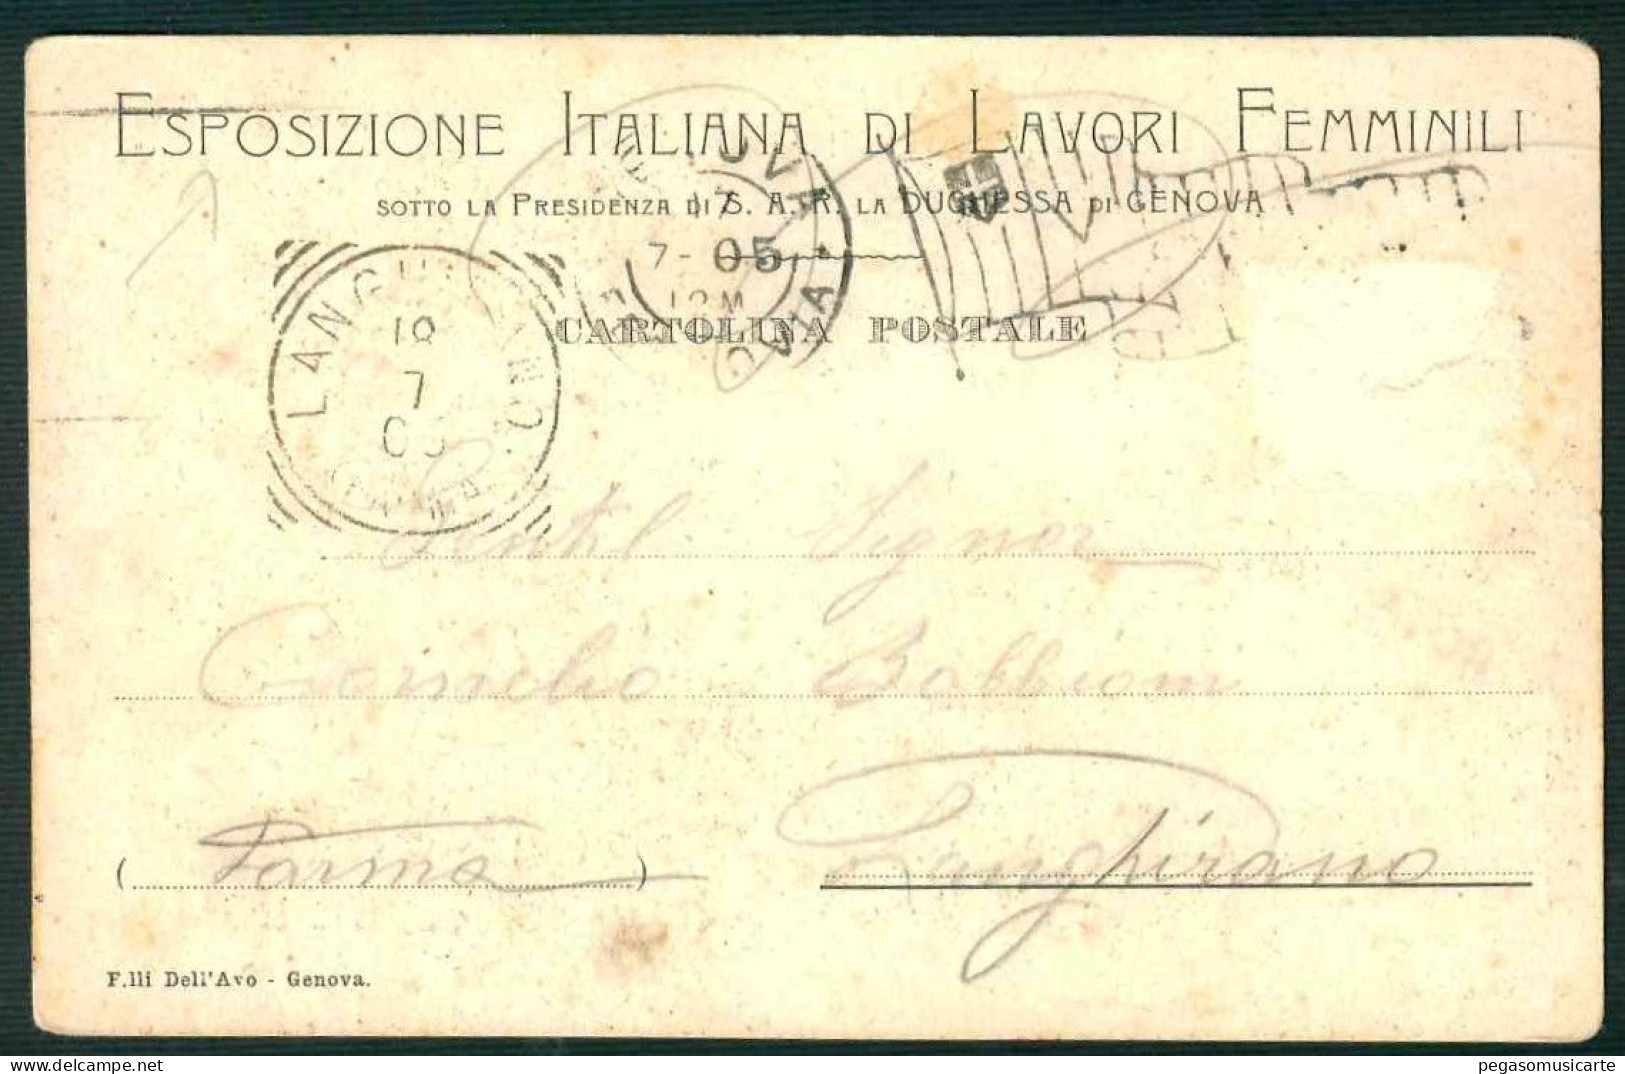 BF112 ESPOSIZIONE ITALIANA DI LAVORI FEMMINILI SOTTO LA PRESIDENZA DI S.A.R.DUCHESSA DI GENOVA 1905 - Patriotic